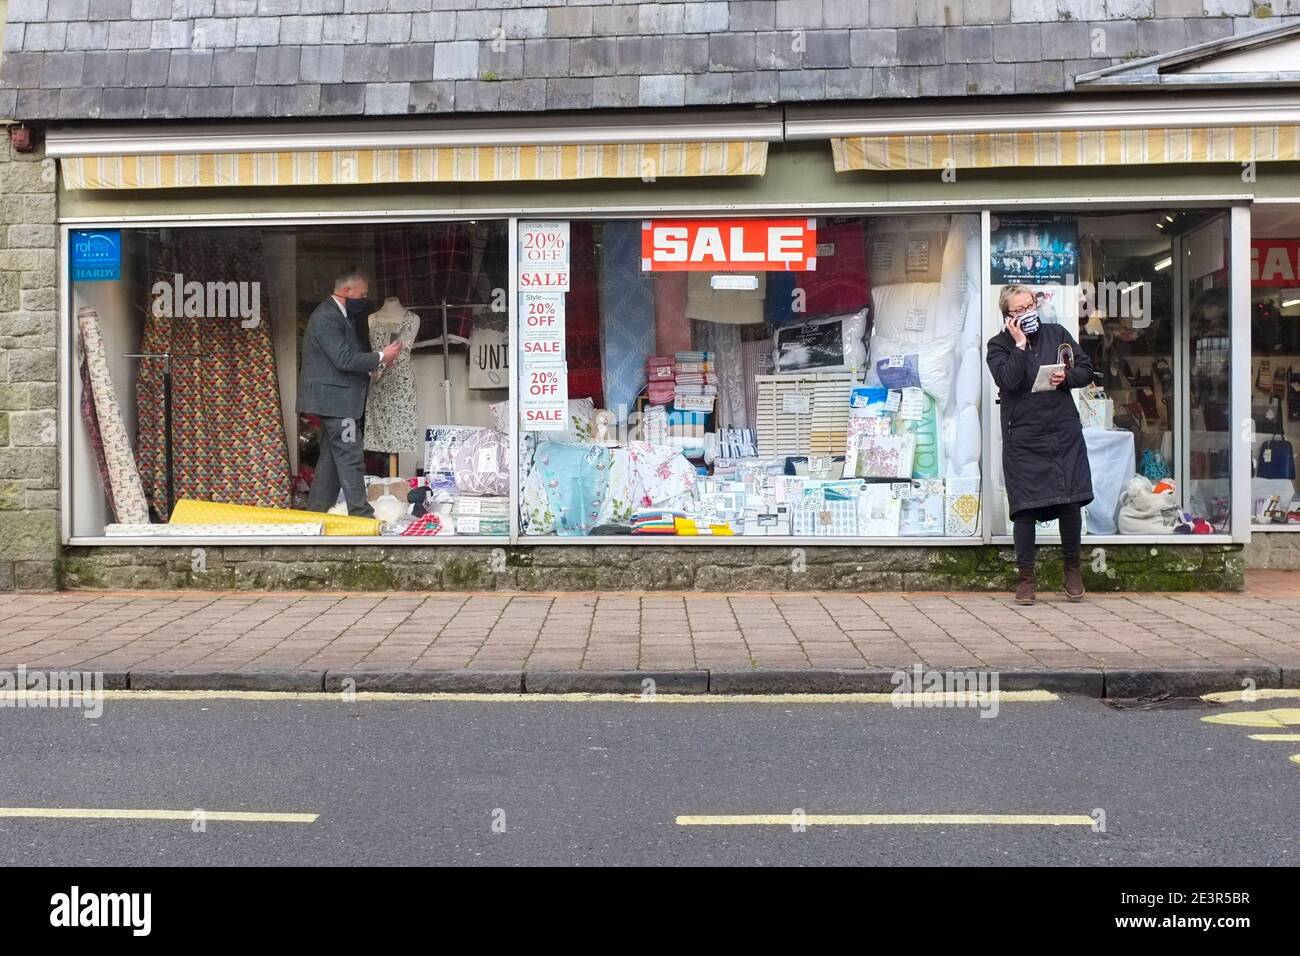 Großbritannien gewöhnt sich an die Einschränkungen des Coronavirus. Ein maskierter Shopper außerhalb eines Shops, in dem ein maskierter Assistent die Anzeige des Verkaufsfensters vorbereitet. Dezember 2020. Stockfoto